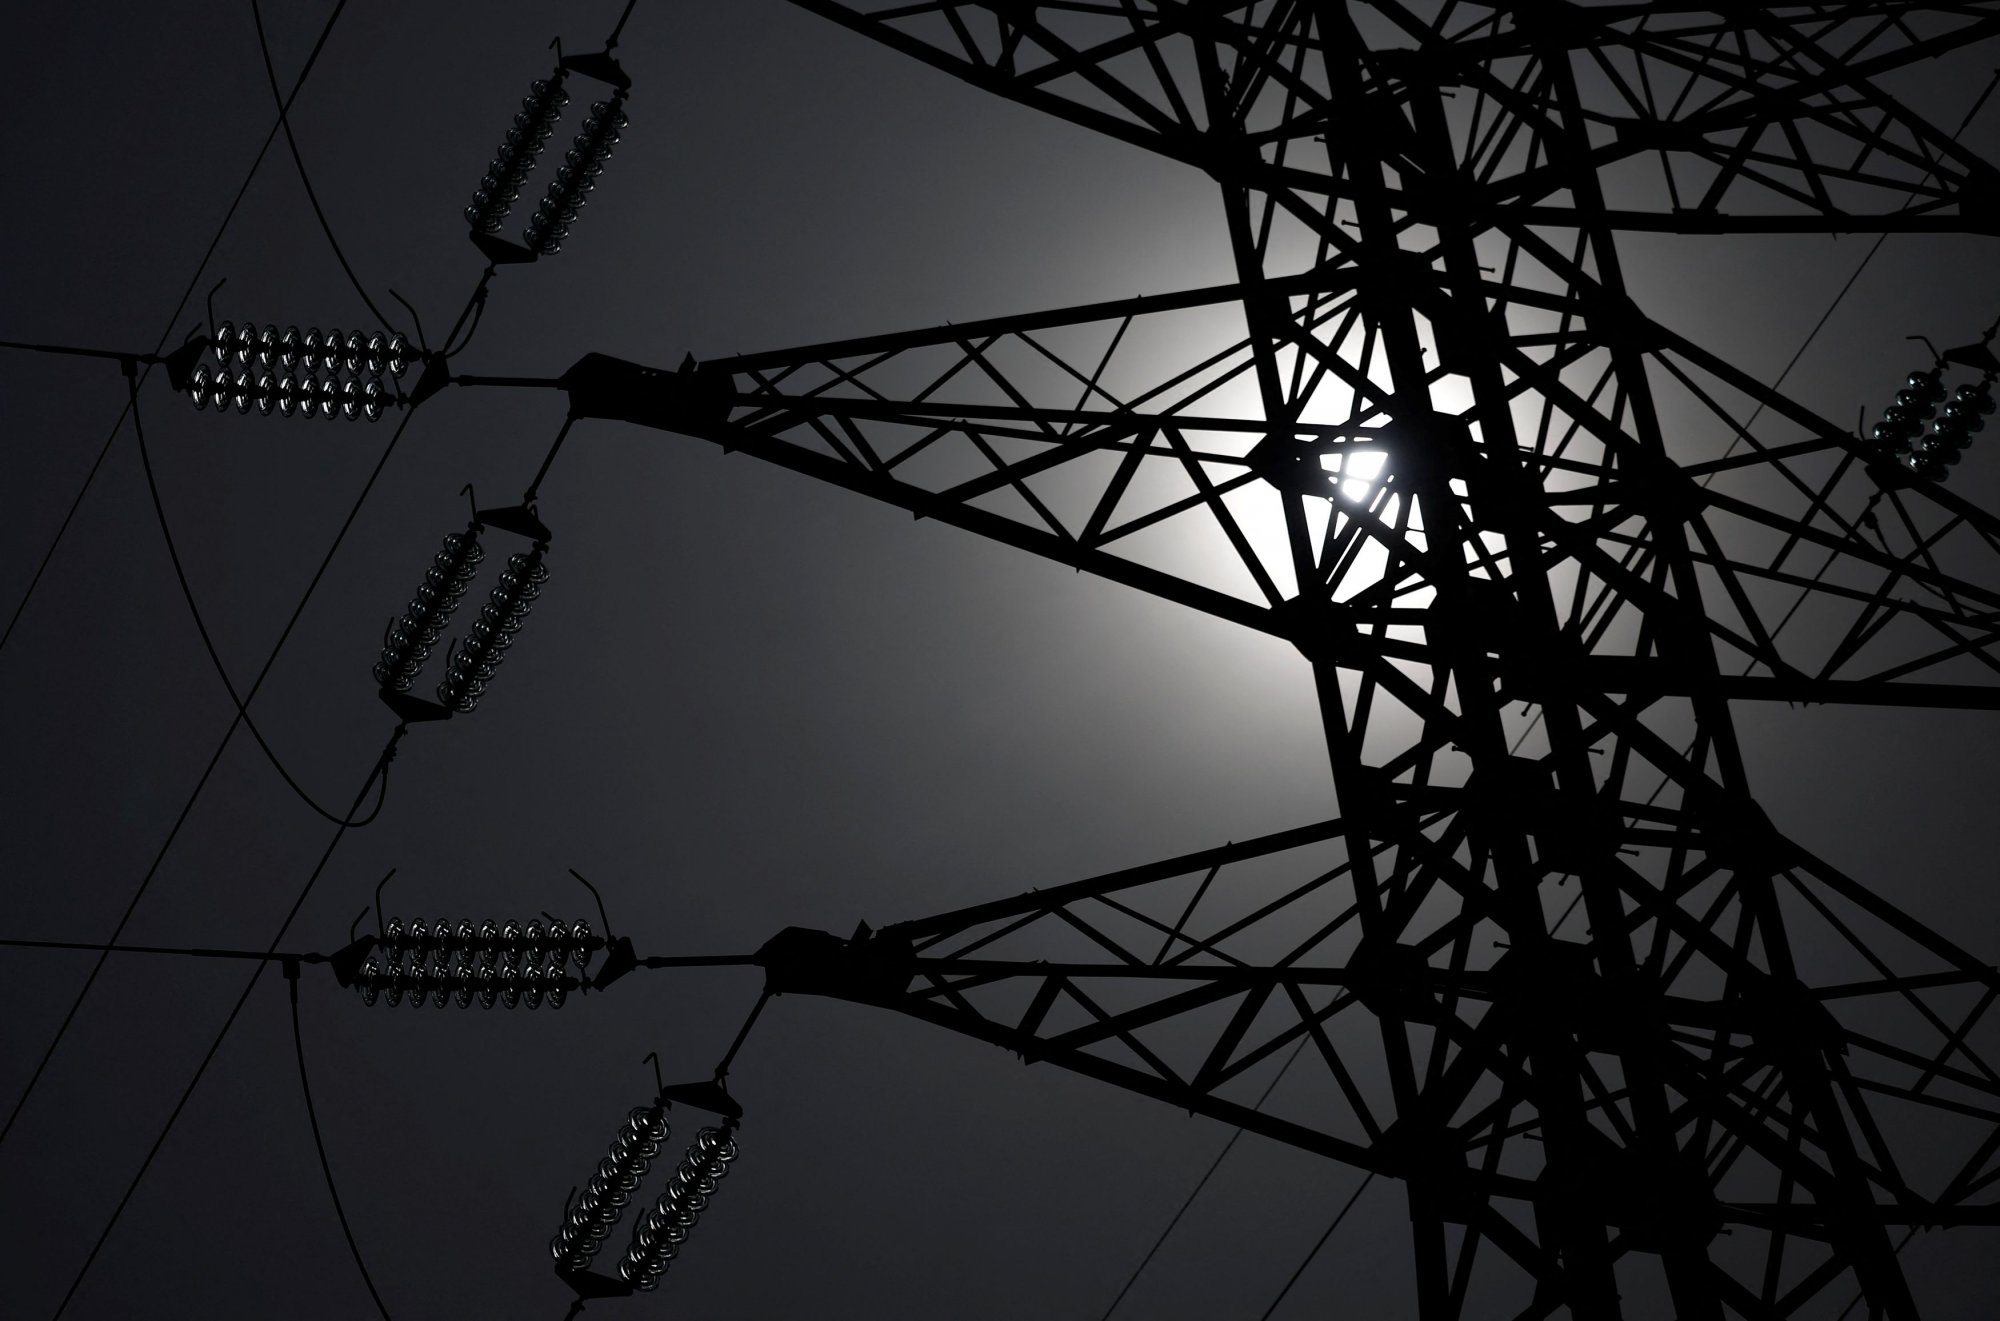 Ηλεκτρικές διασυνδέσεις: Ολοκληρώνονται σημαντικά projects - Ρεύμα σε  Κυκλάδες και Κρήτη το 2025